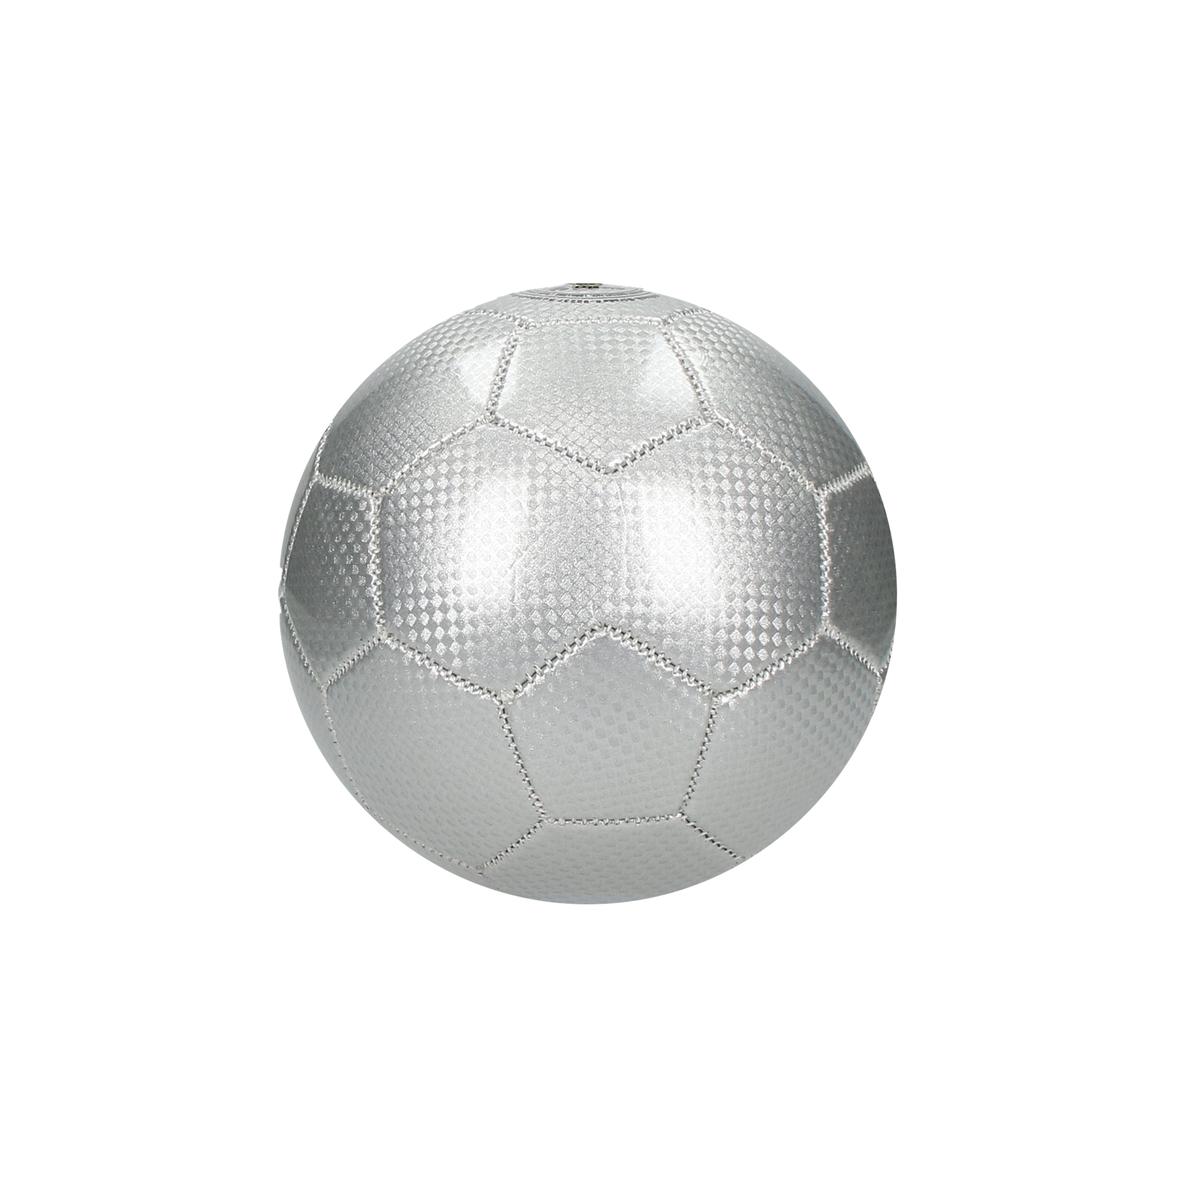 Petit ballon de football personnalisé - Thibault - Zaprinta France